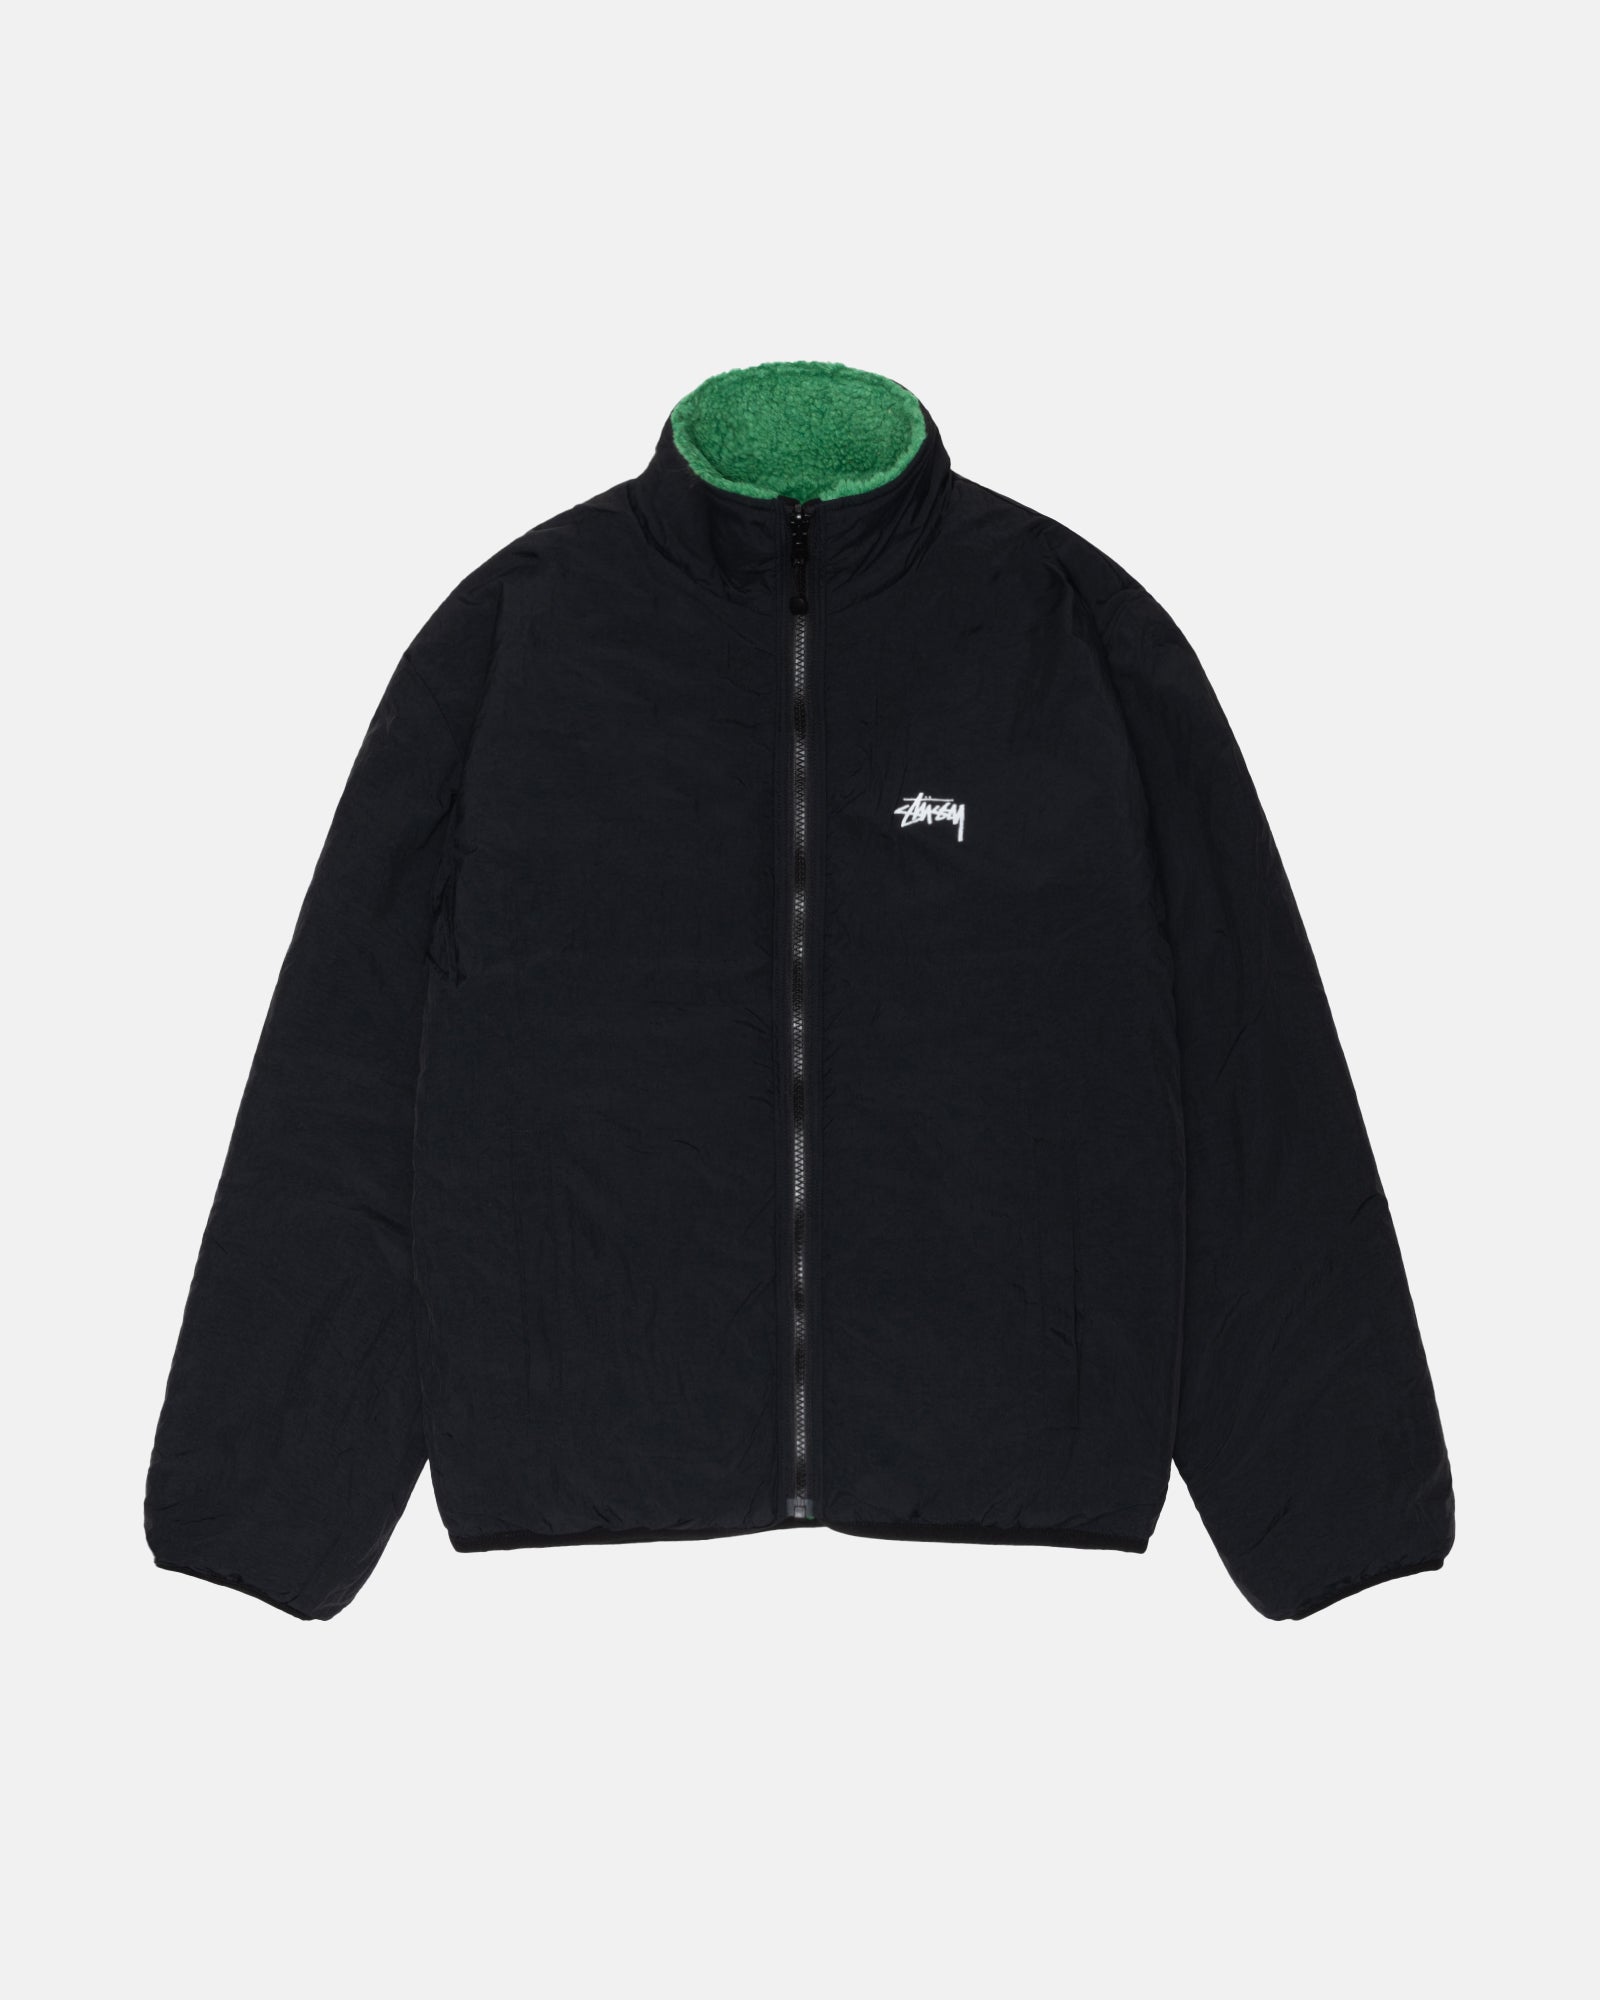 Sherpa Reversible Jacket in green – Stüssy Japan